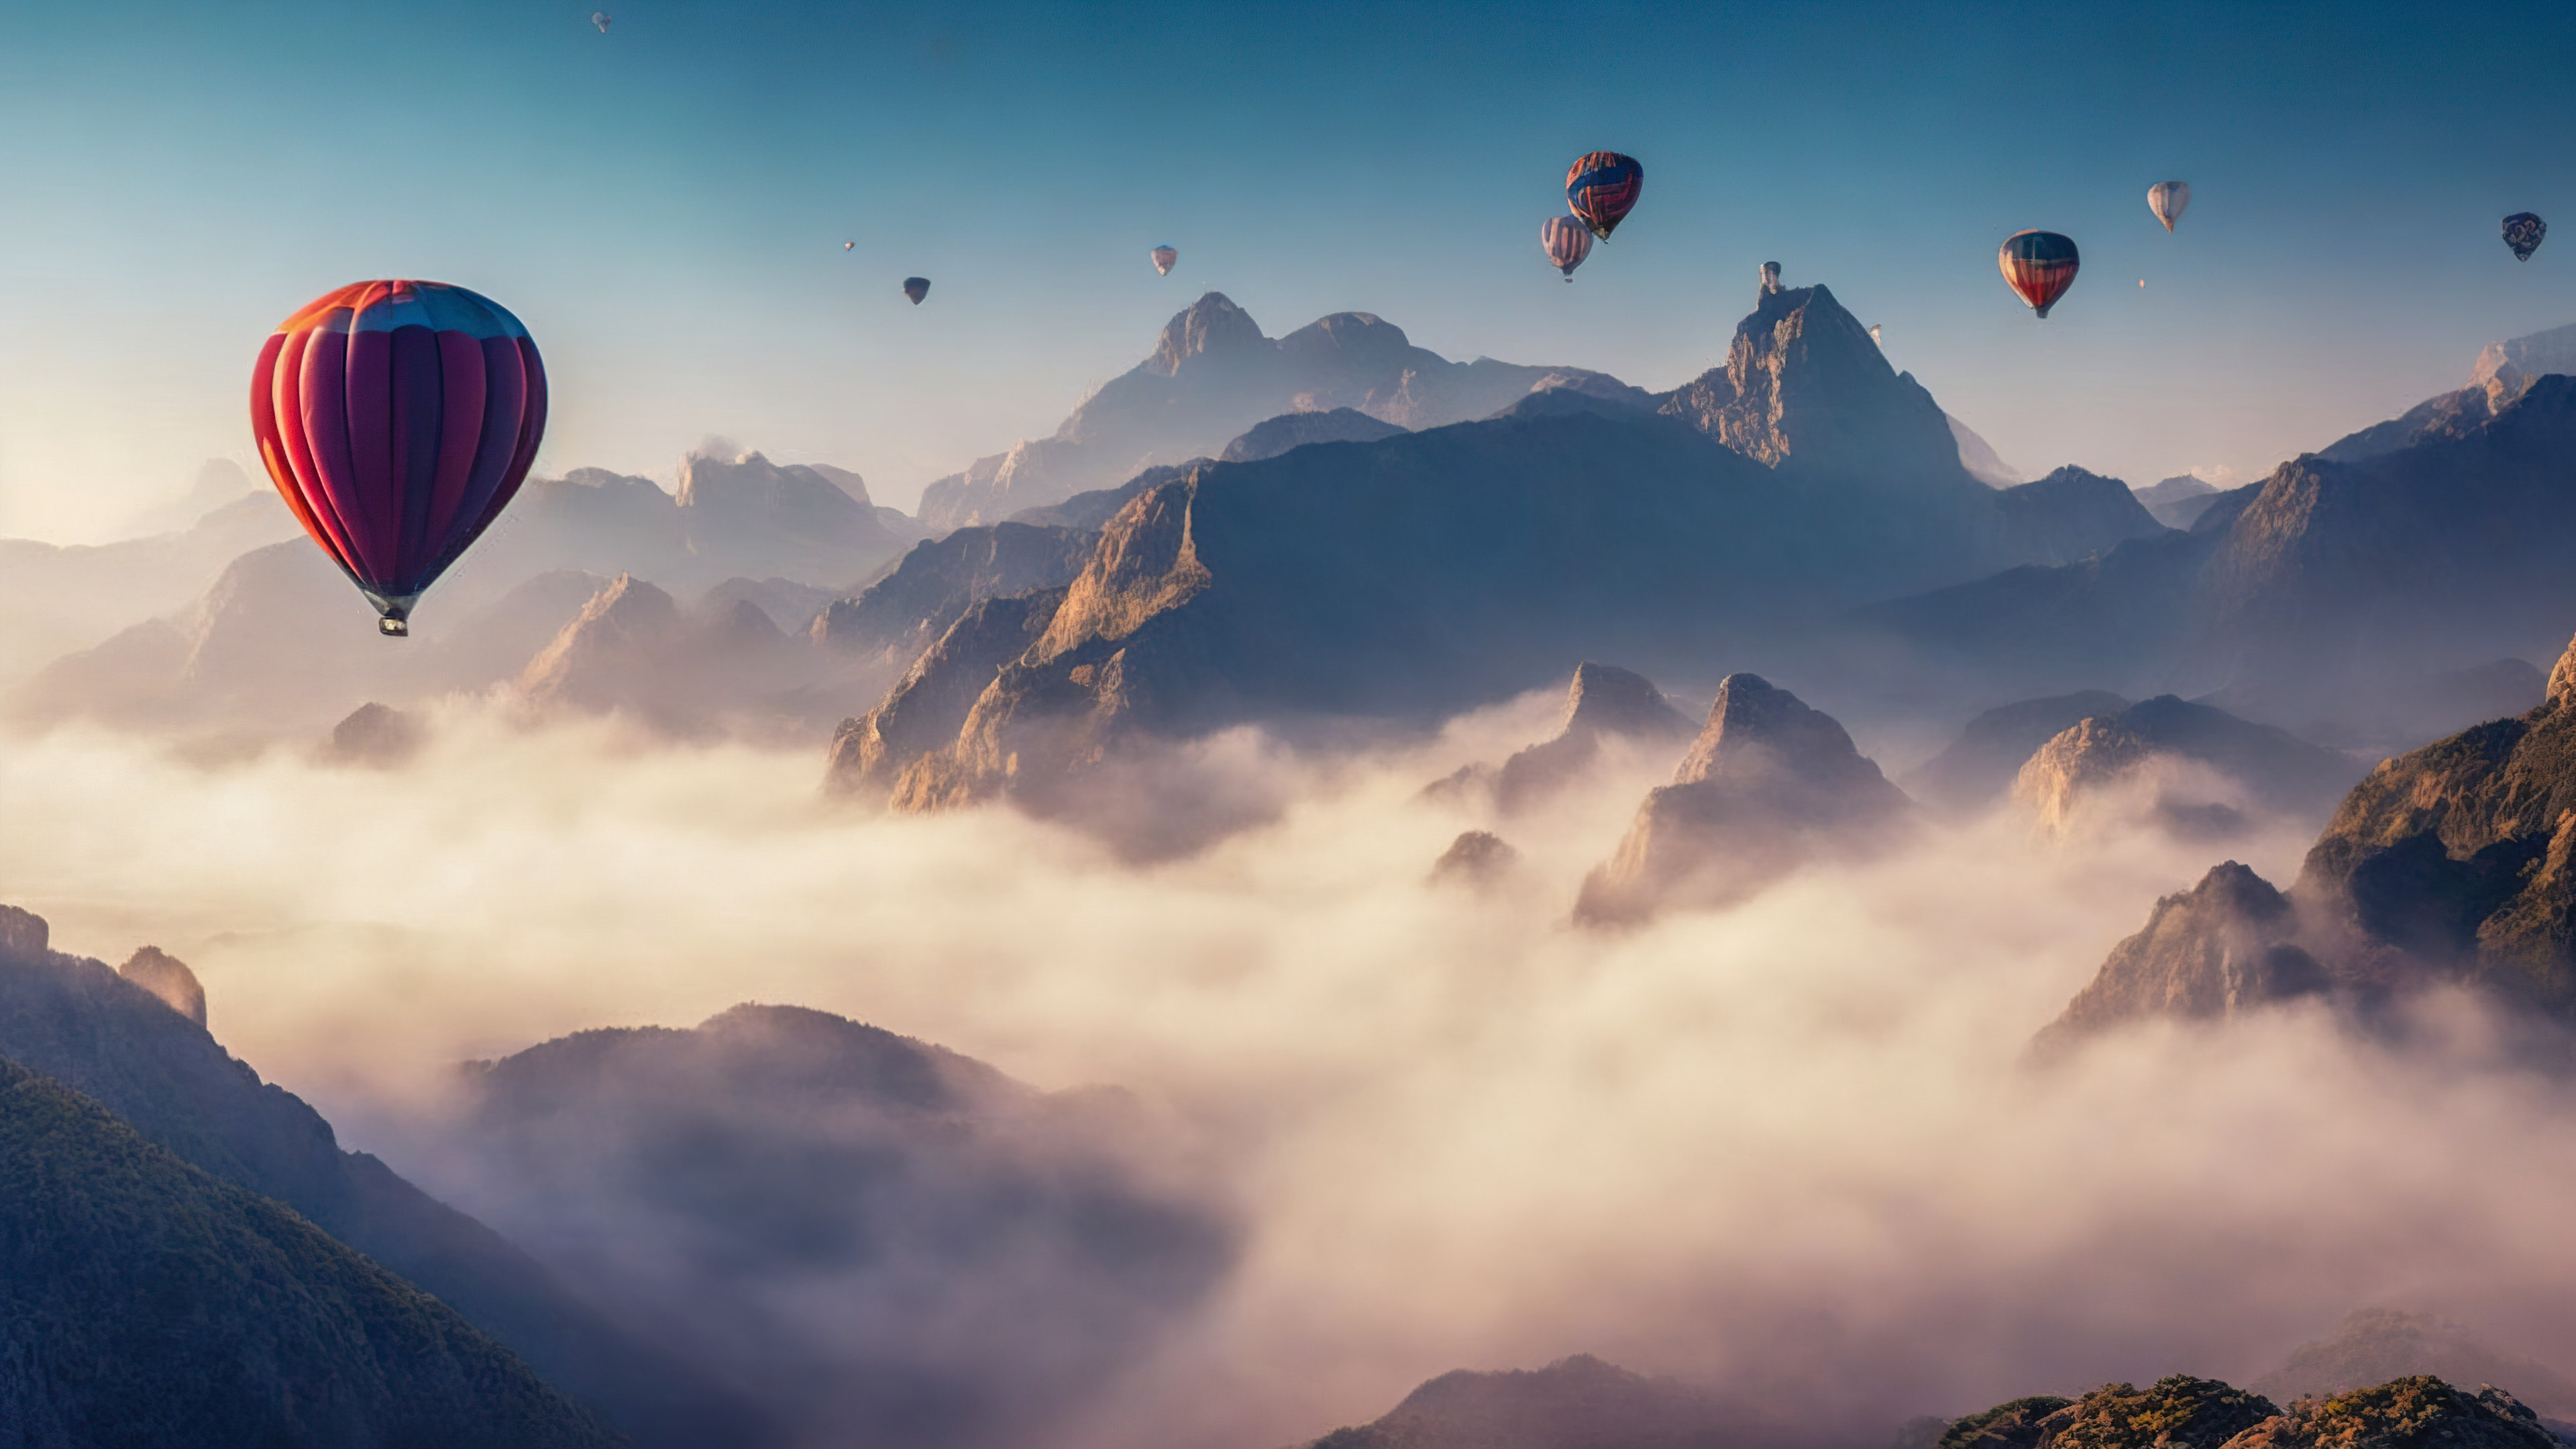 Téléchargez le surréalisme avec notre fond d'écran de paysage montagneux, capturant un ciel surréaliste rempli de montgolfières dérivant paisiblement au-dessus d'un paysage montagneux brumeux.